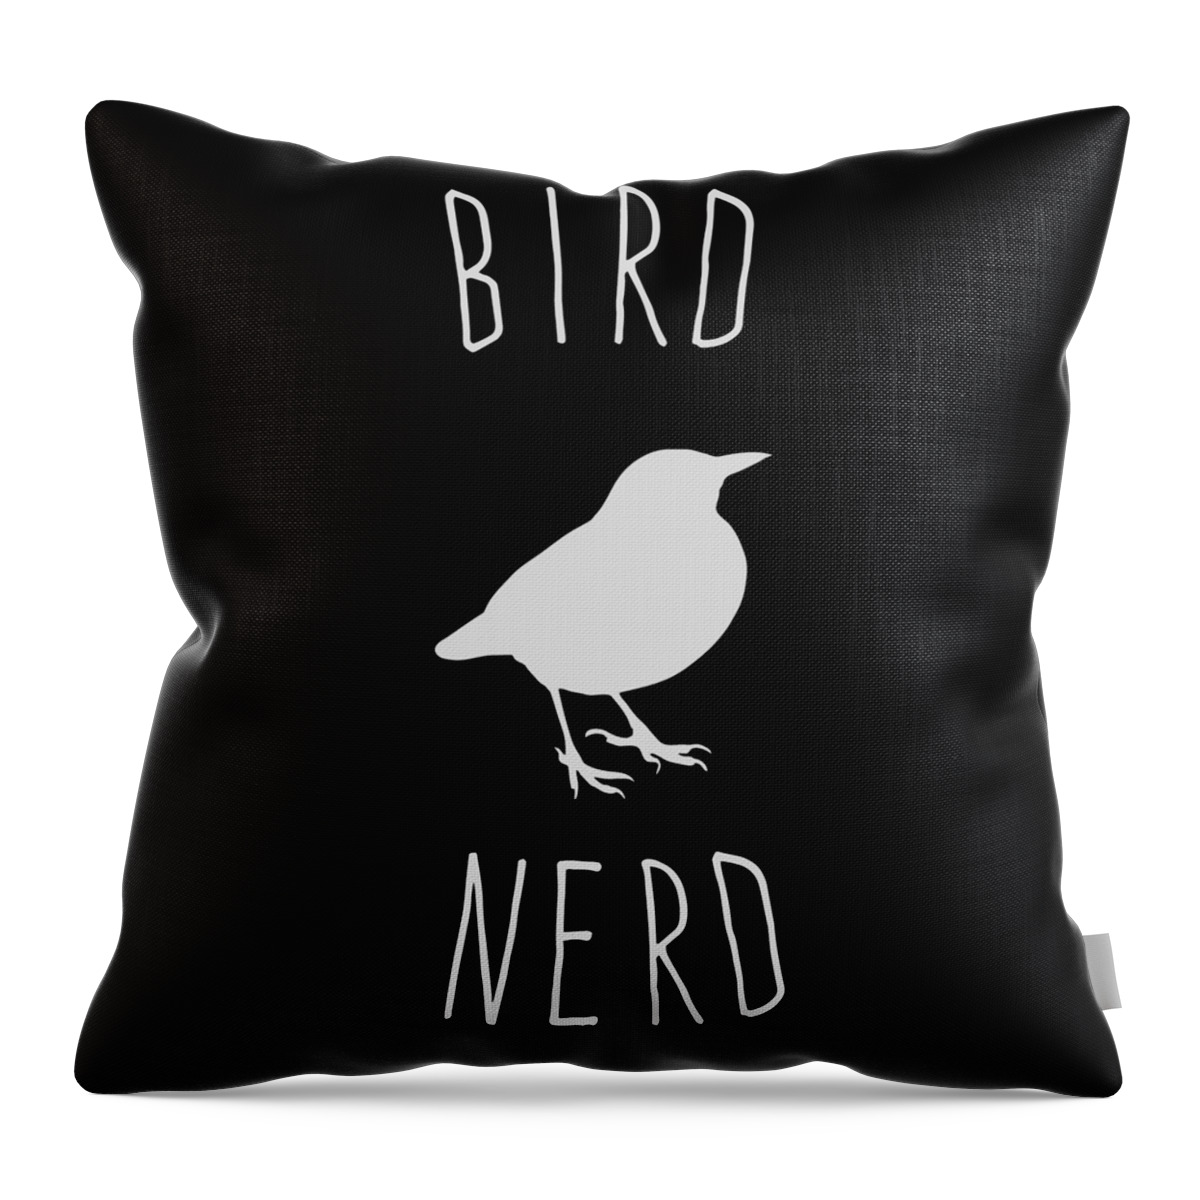 Birds Throw Pillow featuring the digital art Bird Nerd Birding by Flippin Sweet Gear